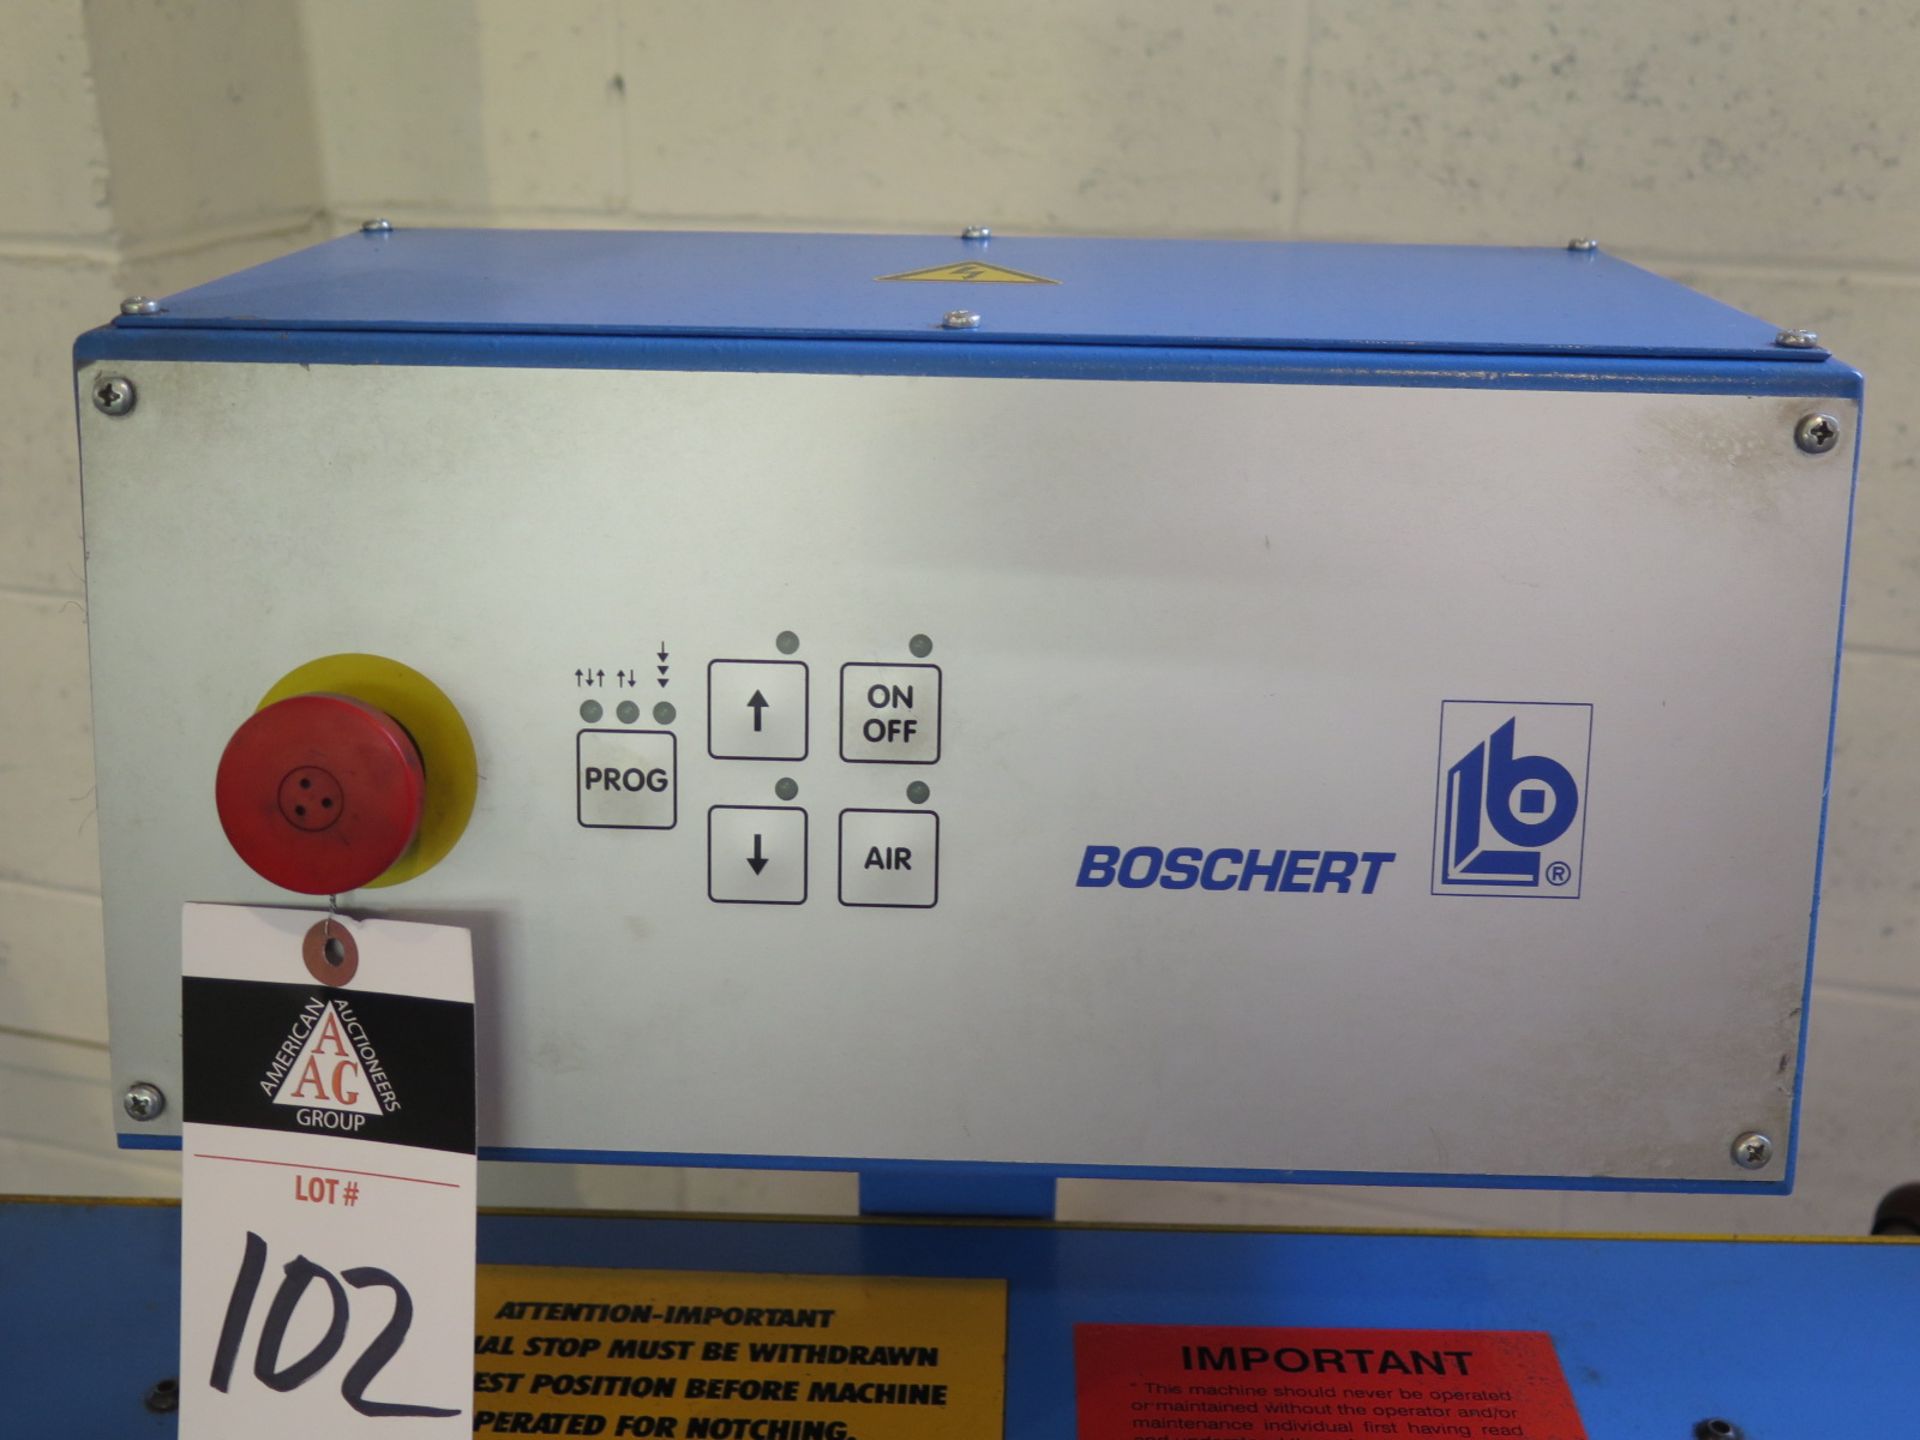 Boschert type LB12 8 5/8â€ x 8 5/8â€ Power Corner Notcher s/n 3072 w/ Fence System - Image 4 of 4